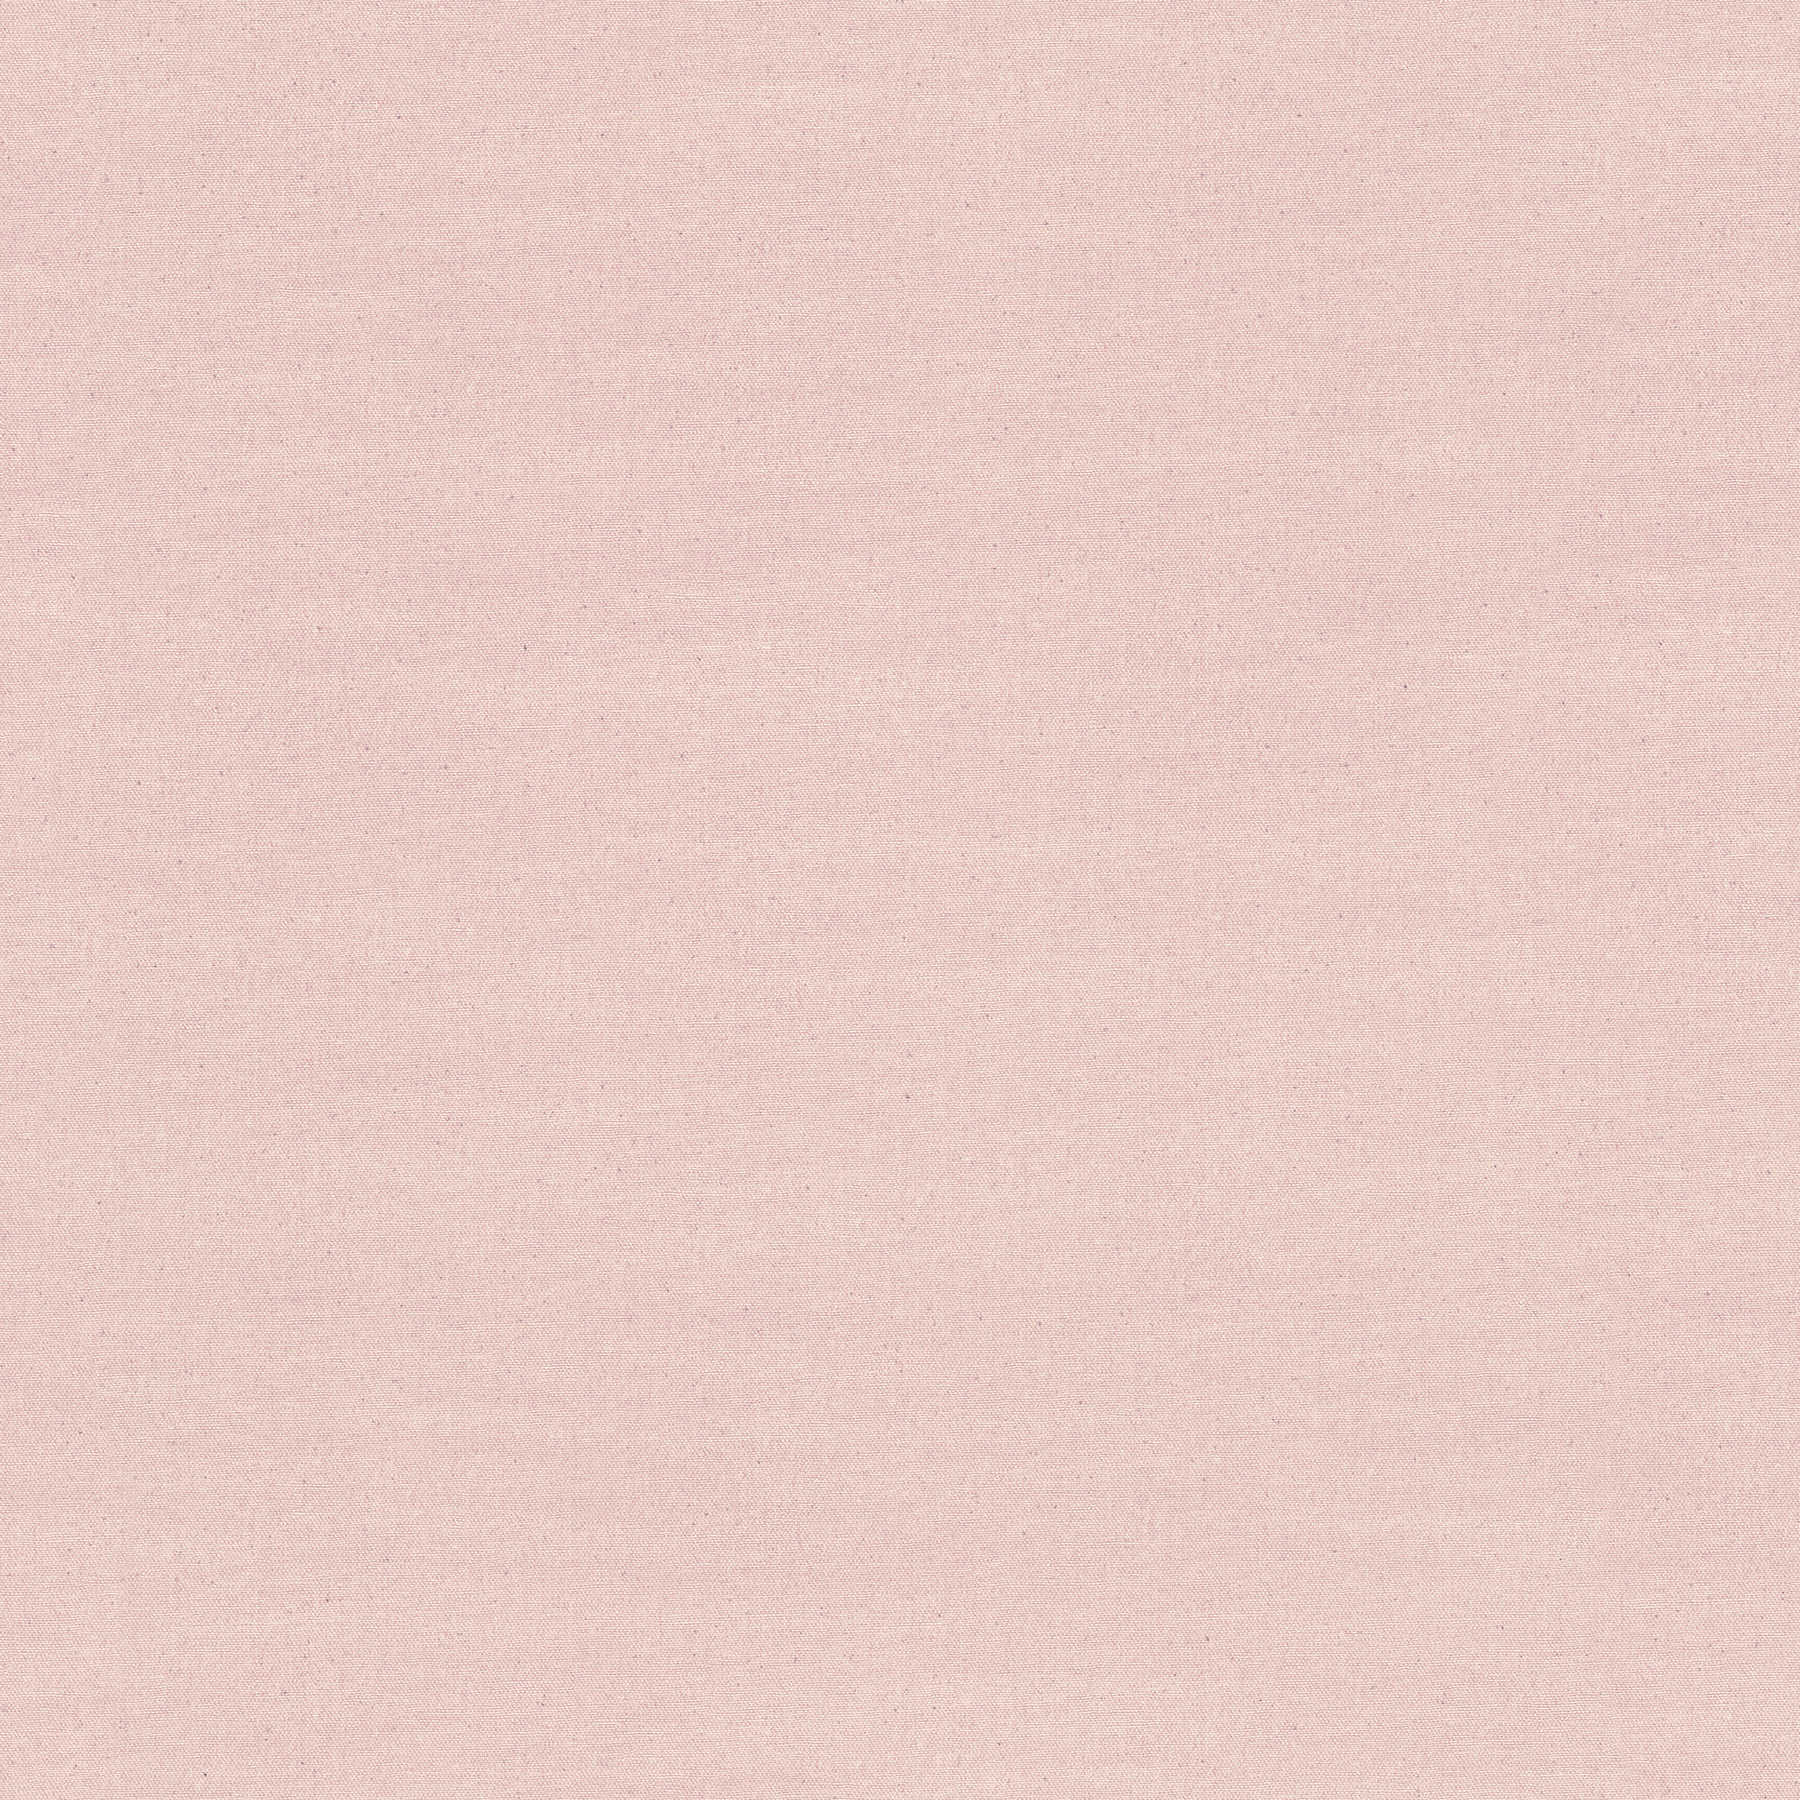 Papier peint uni rose design textile avec pois gris
